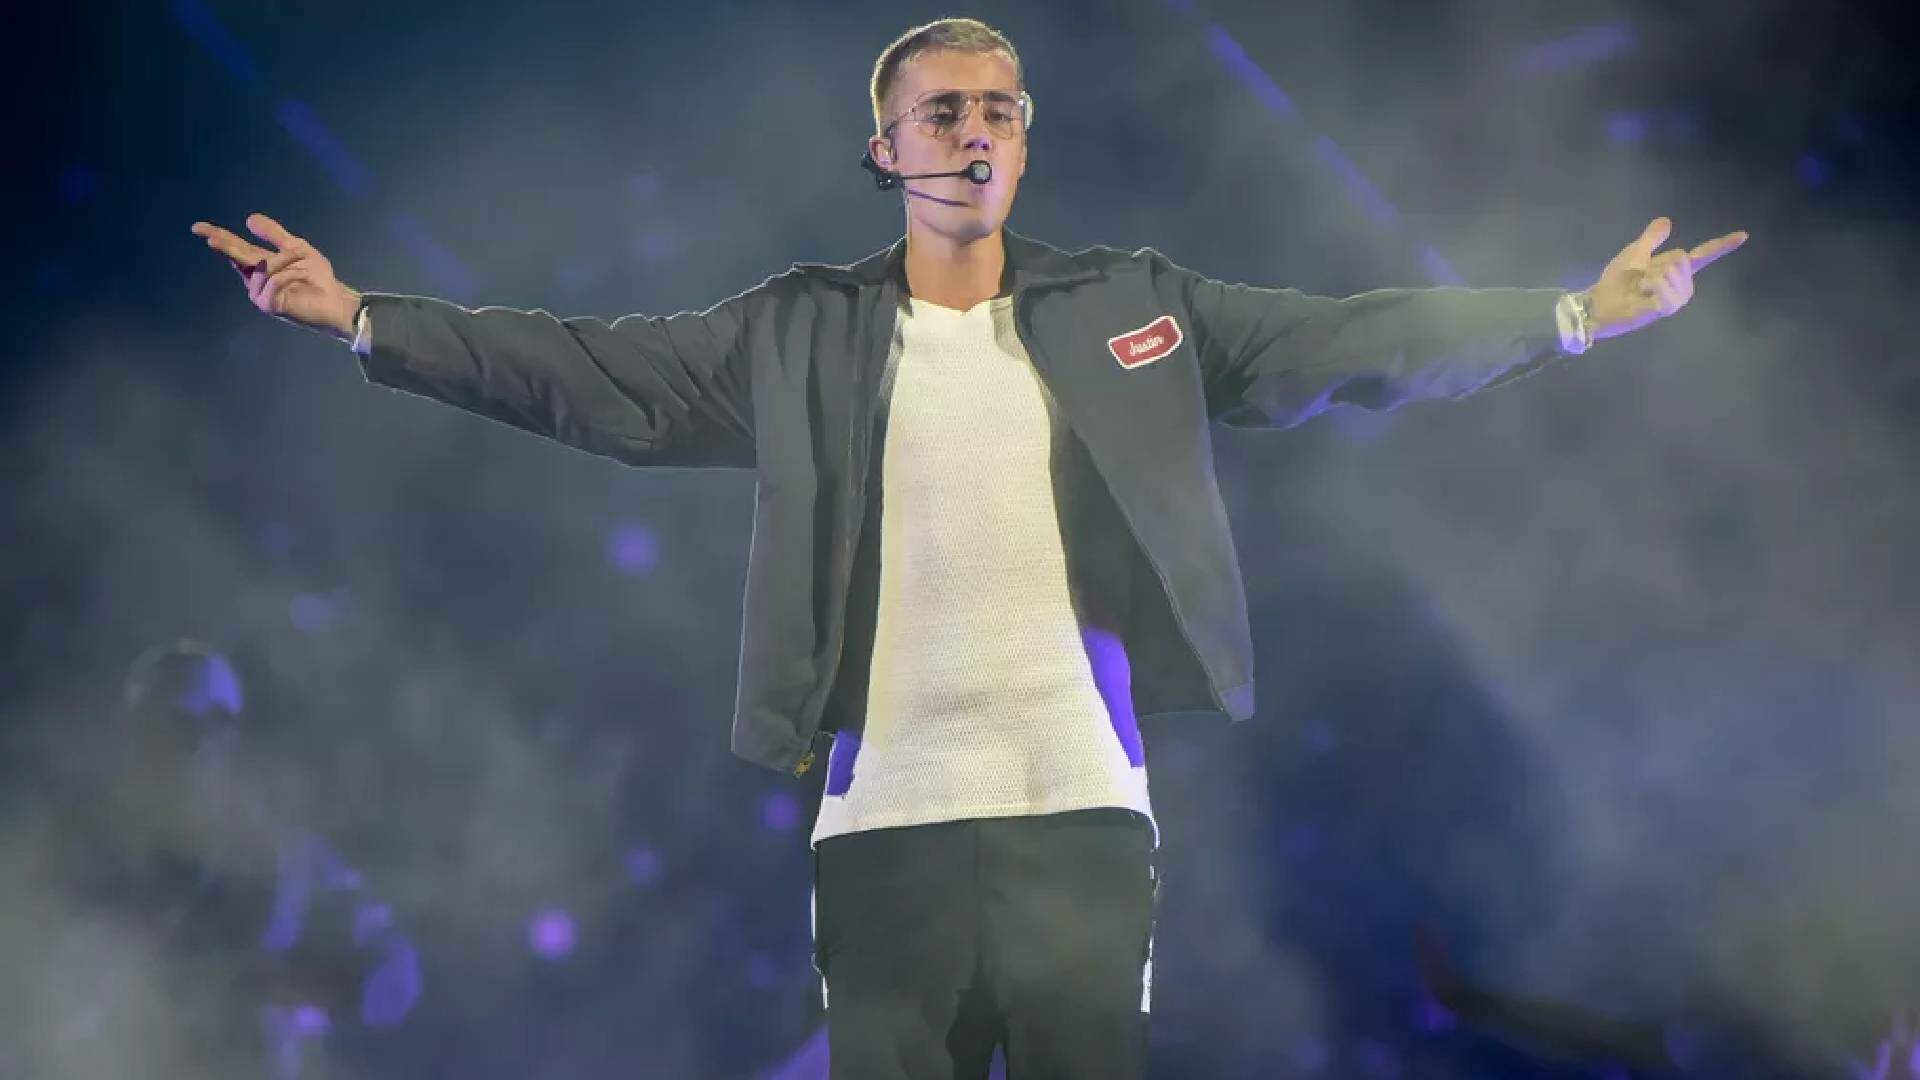 Justin Bieber poderá voltar a fazer shows? Site expõe informações sigilosas sobre retorno do cantor - Metropolitana FM